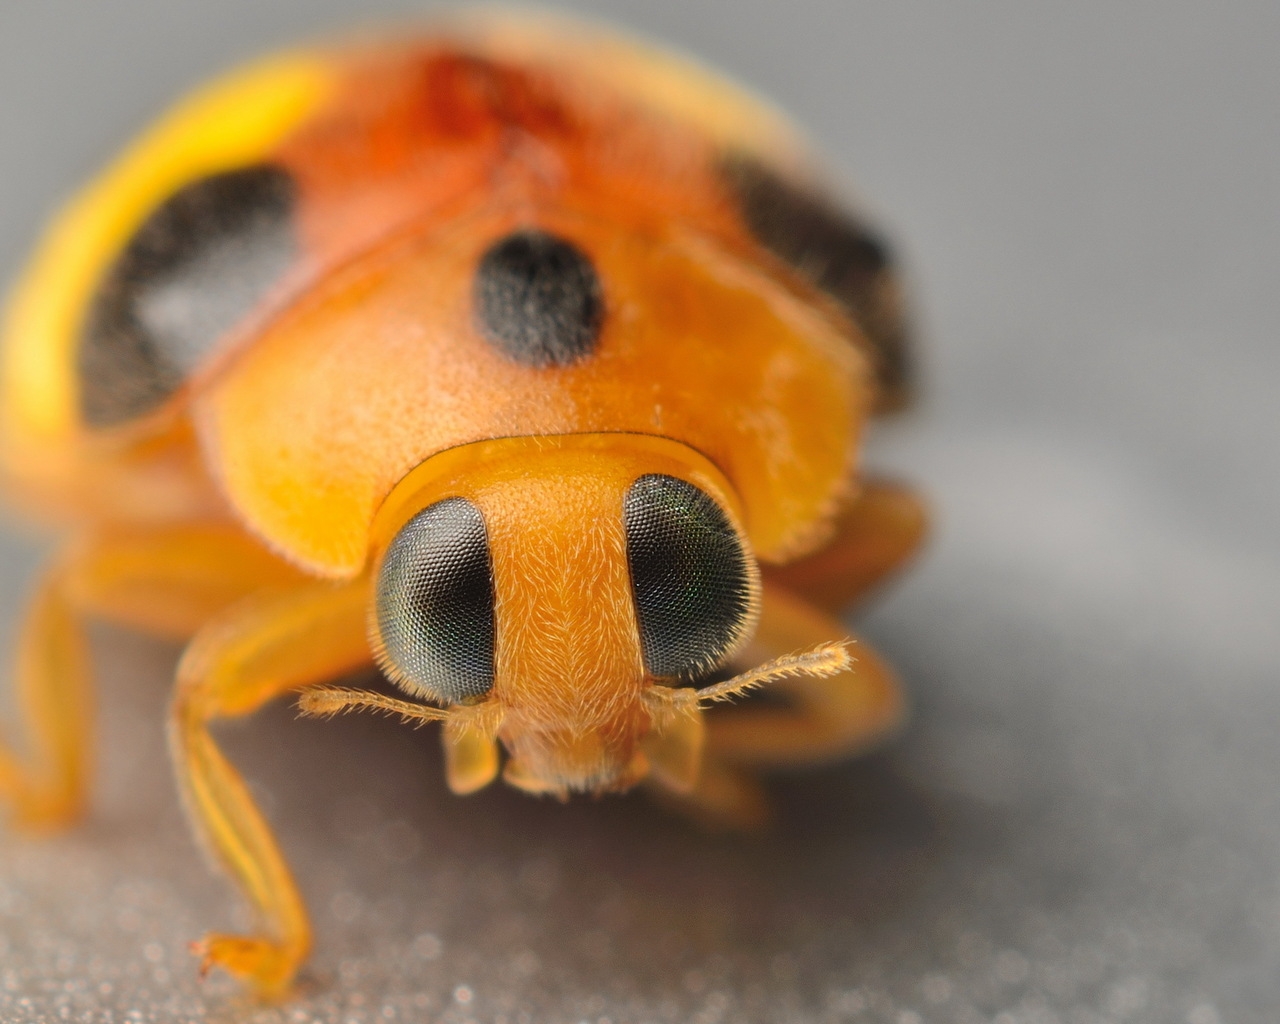 Yellow Ladybug for 1280 x 1024 resolution